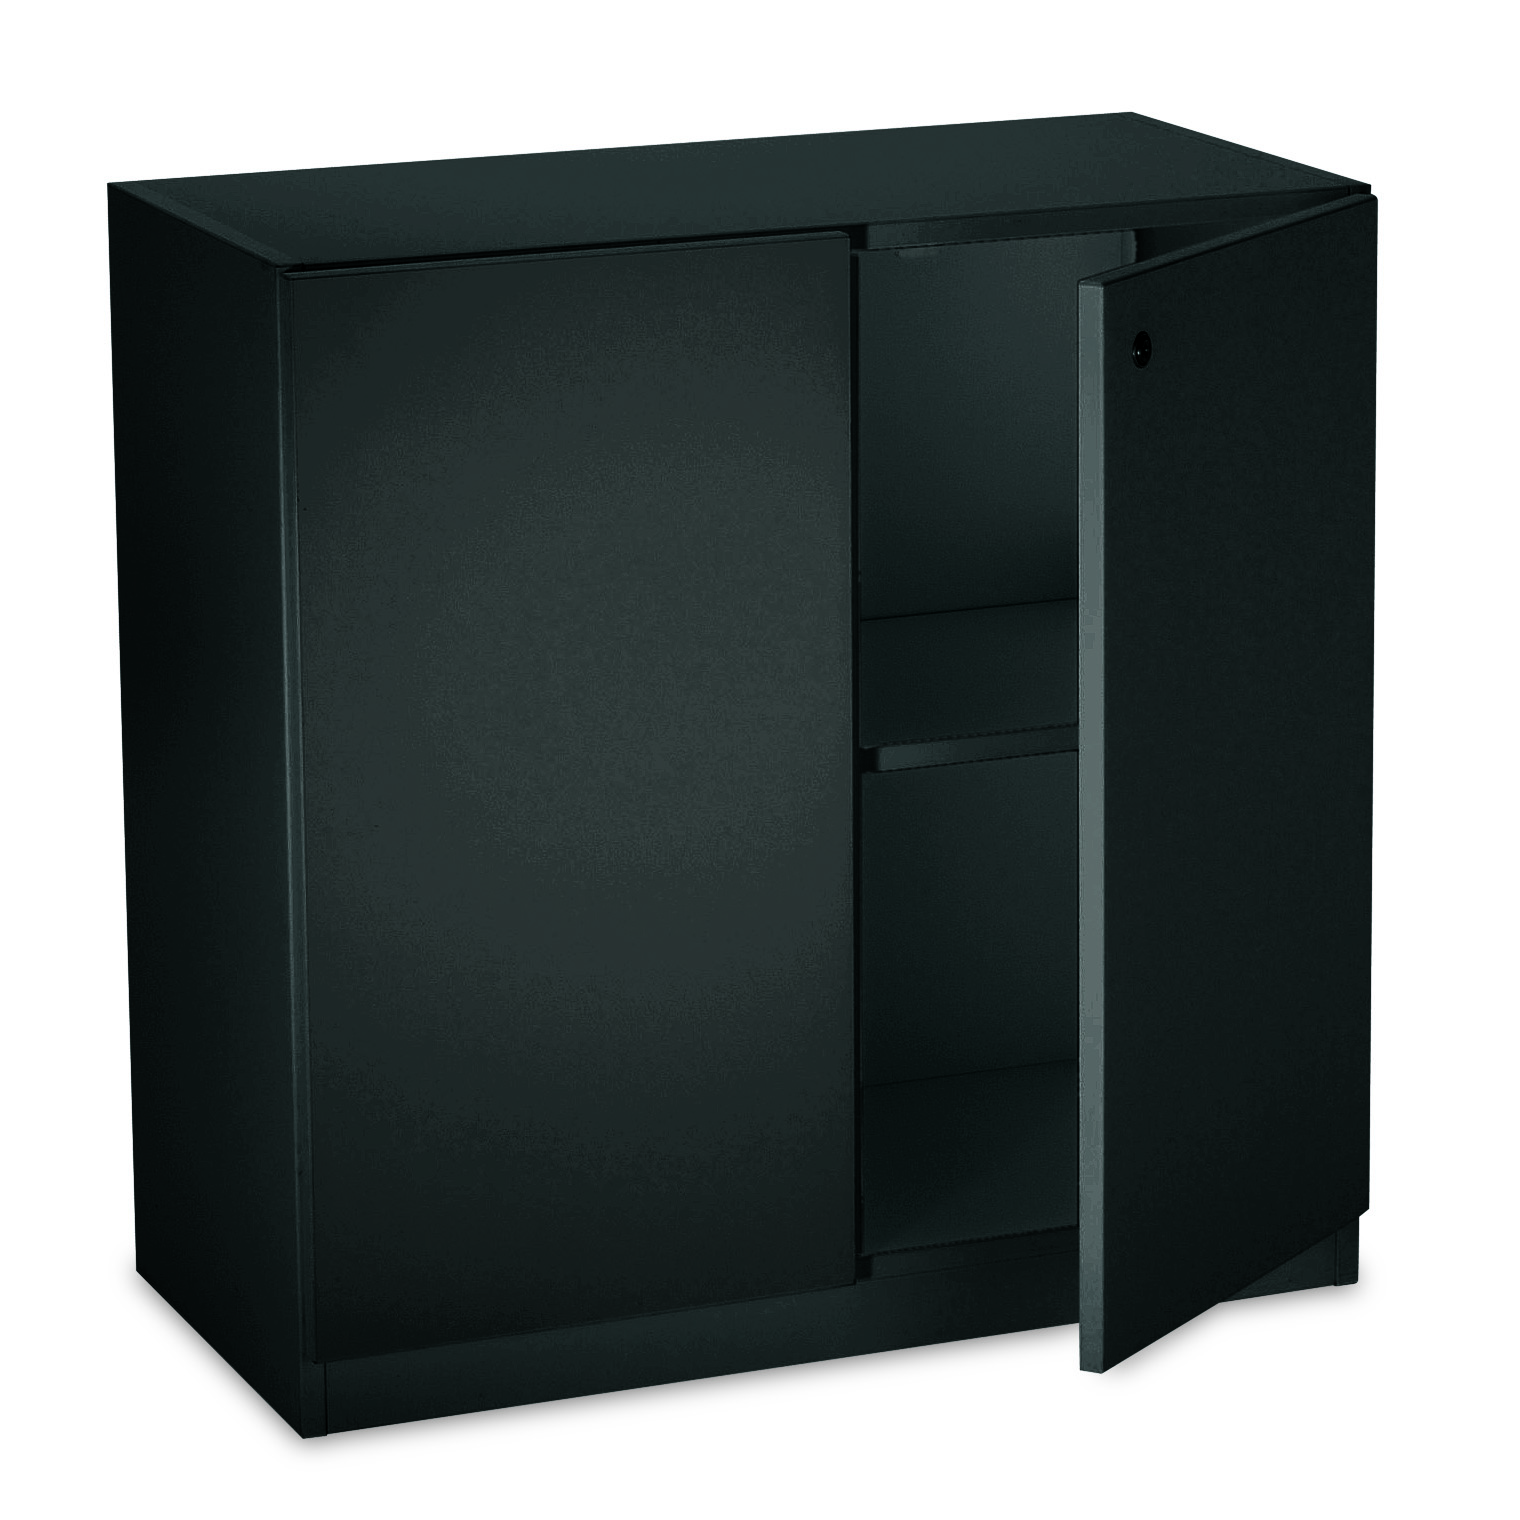 Home Office Set black: Tisch, Chef-Büro-Drehstuhl, Rollcontainer, Sideboard und Papierkorb